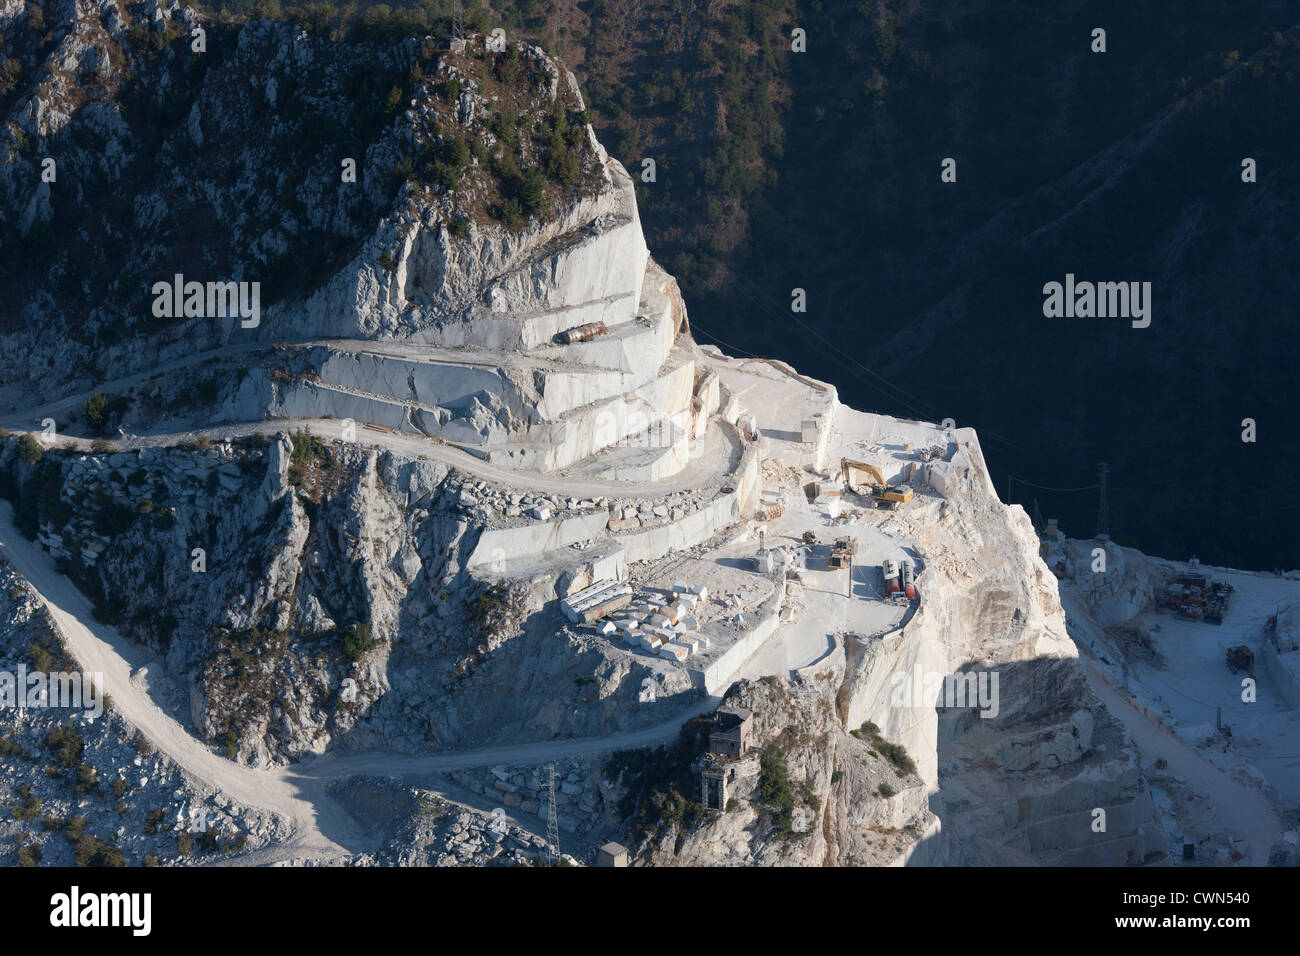 LUFTAUFNAHME. Steinbruch aus weißem Marmor. Carrara, Provinz Massa und Carrara, Toskana, Italien. Stockfoto